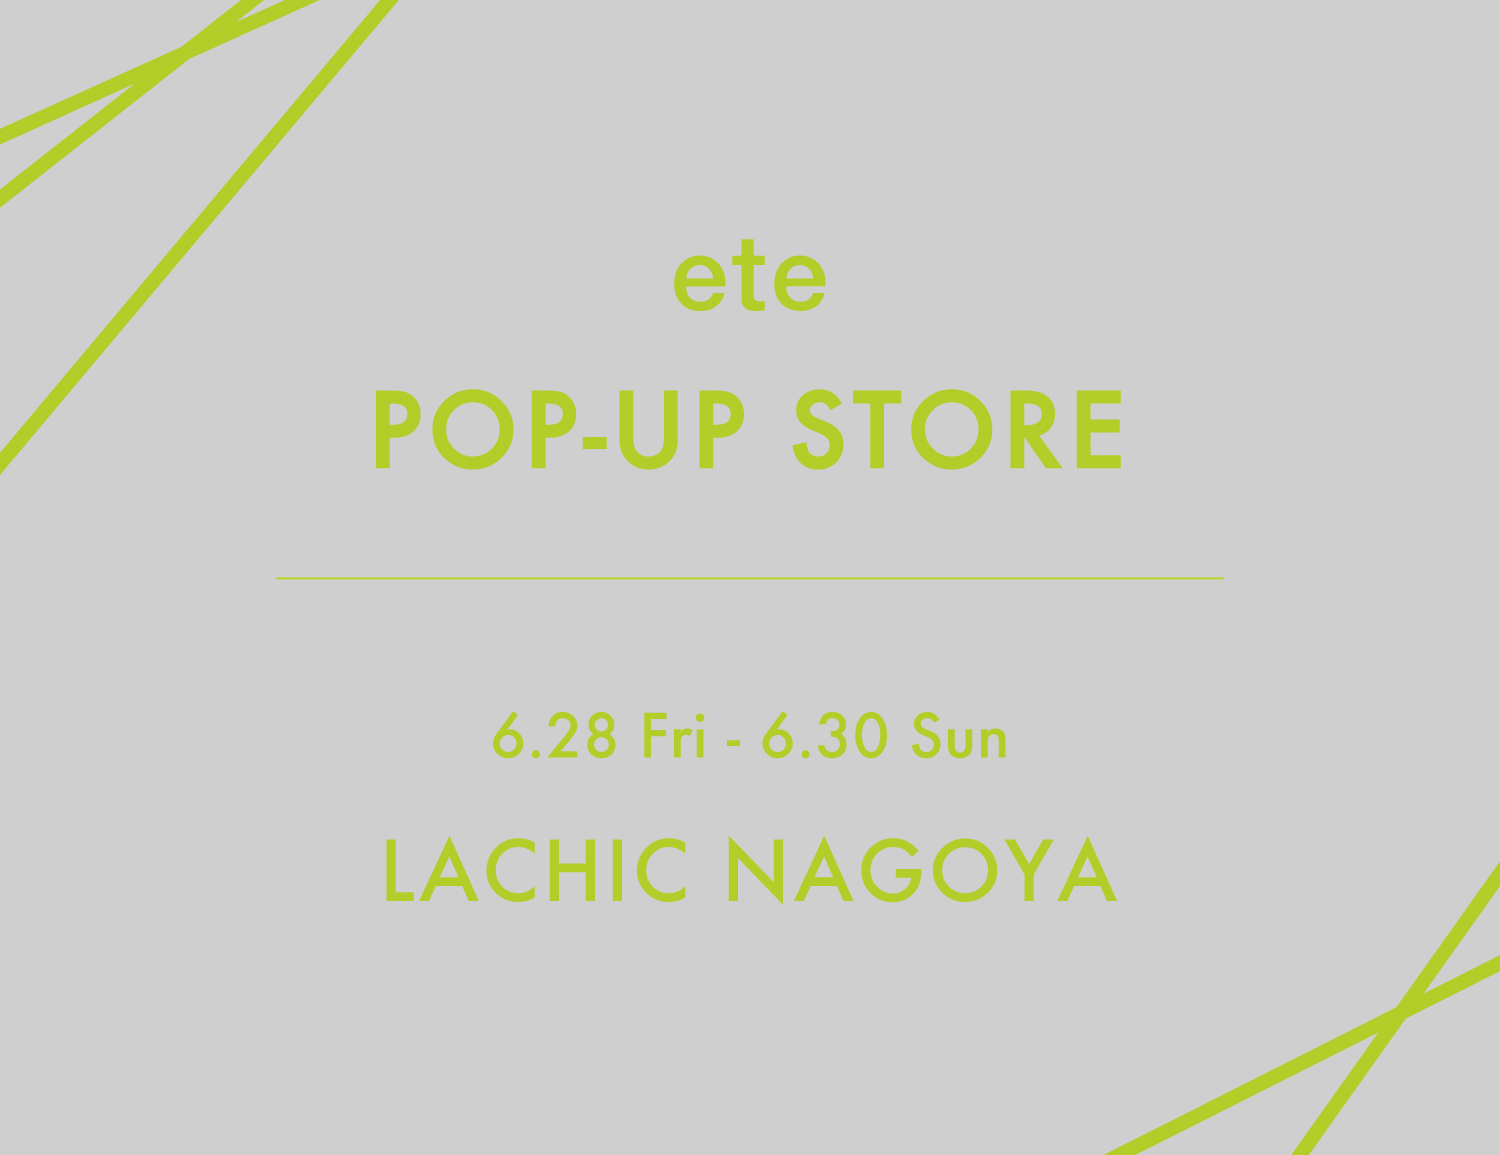 eteラシック店 “POP-UP STORE” Open